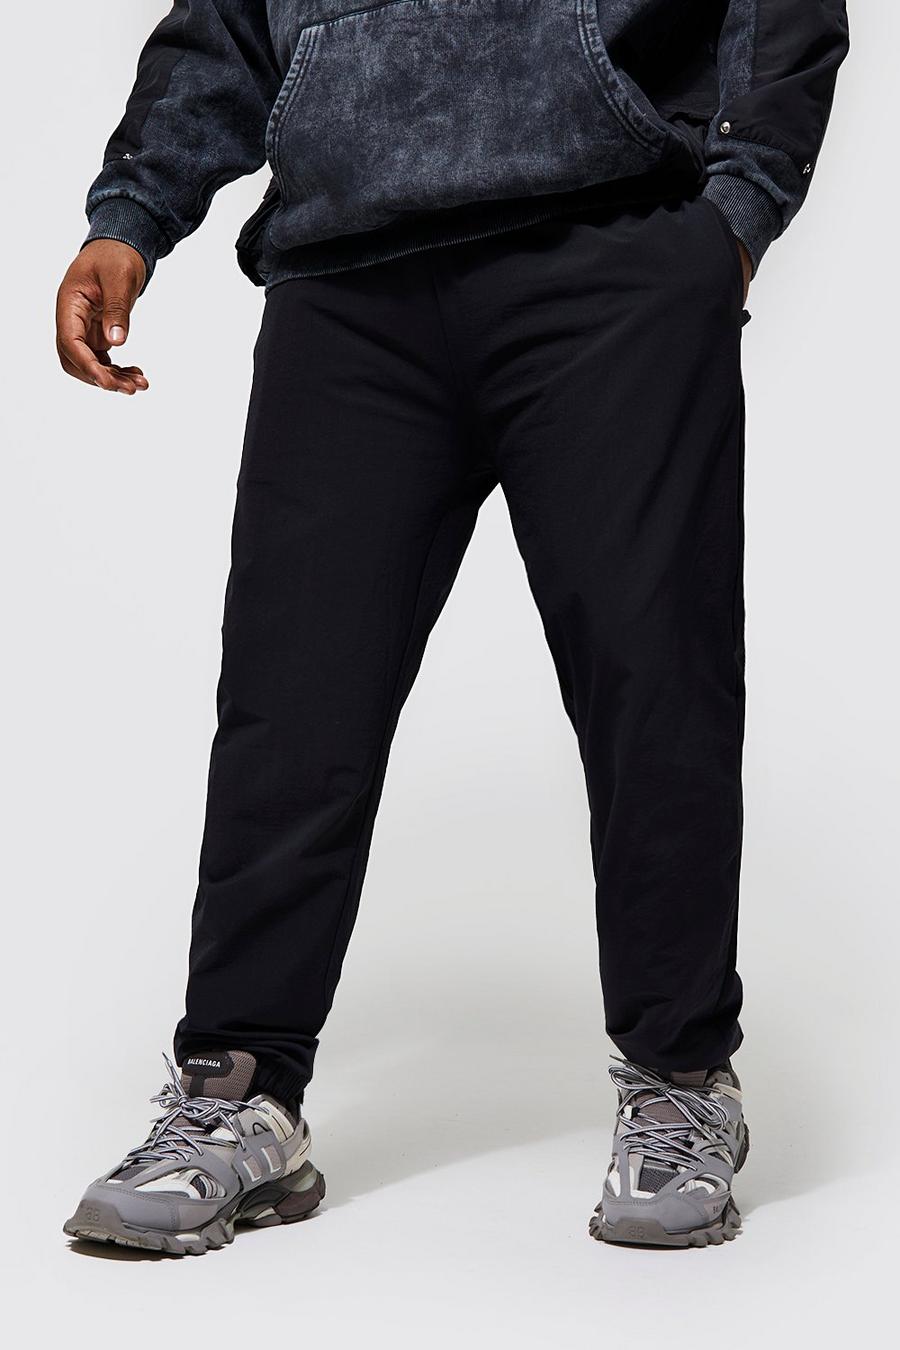 Pantalón Plus ajustado técnico con botamanga, Black nero